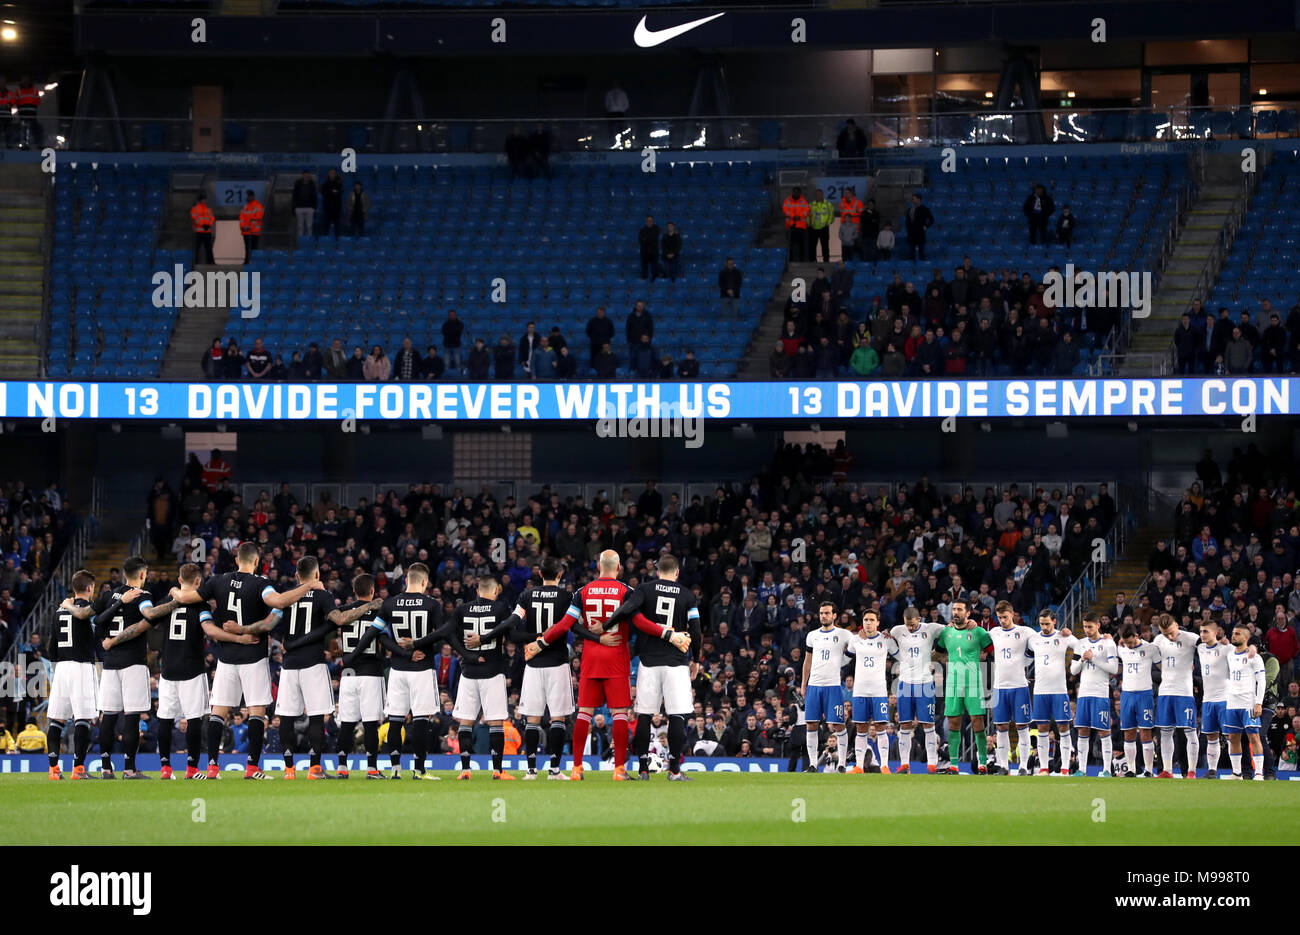 Spieler beobachten eine Minuten Stille für Fußballer Davide Astori während  der internationalen Freundschaftsspiel am Eithad Stadion, Manchester  Stockfotografie - Alamy